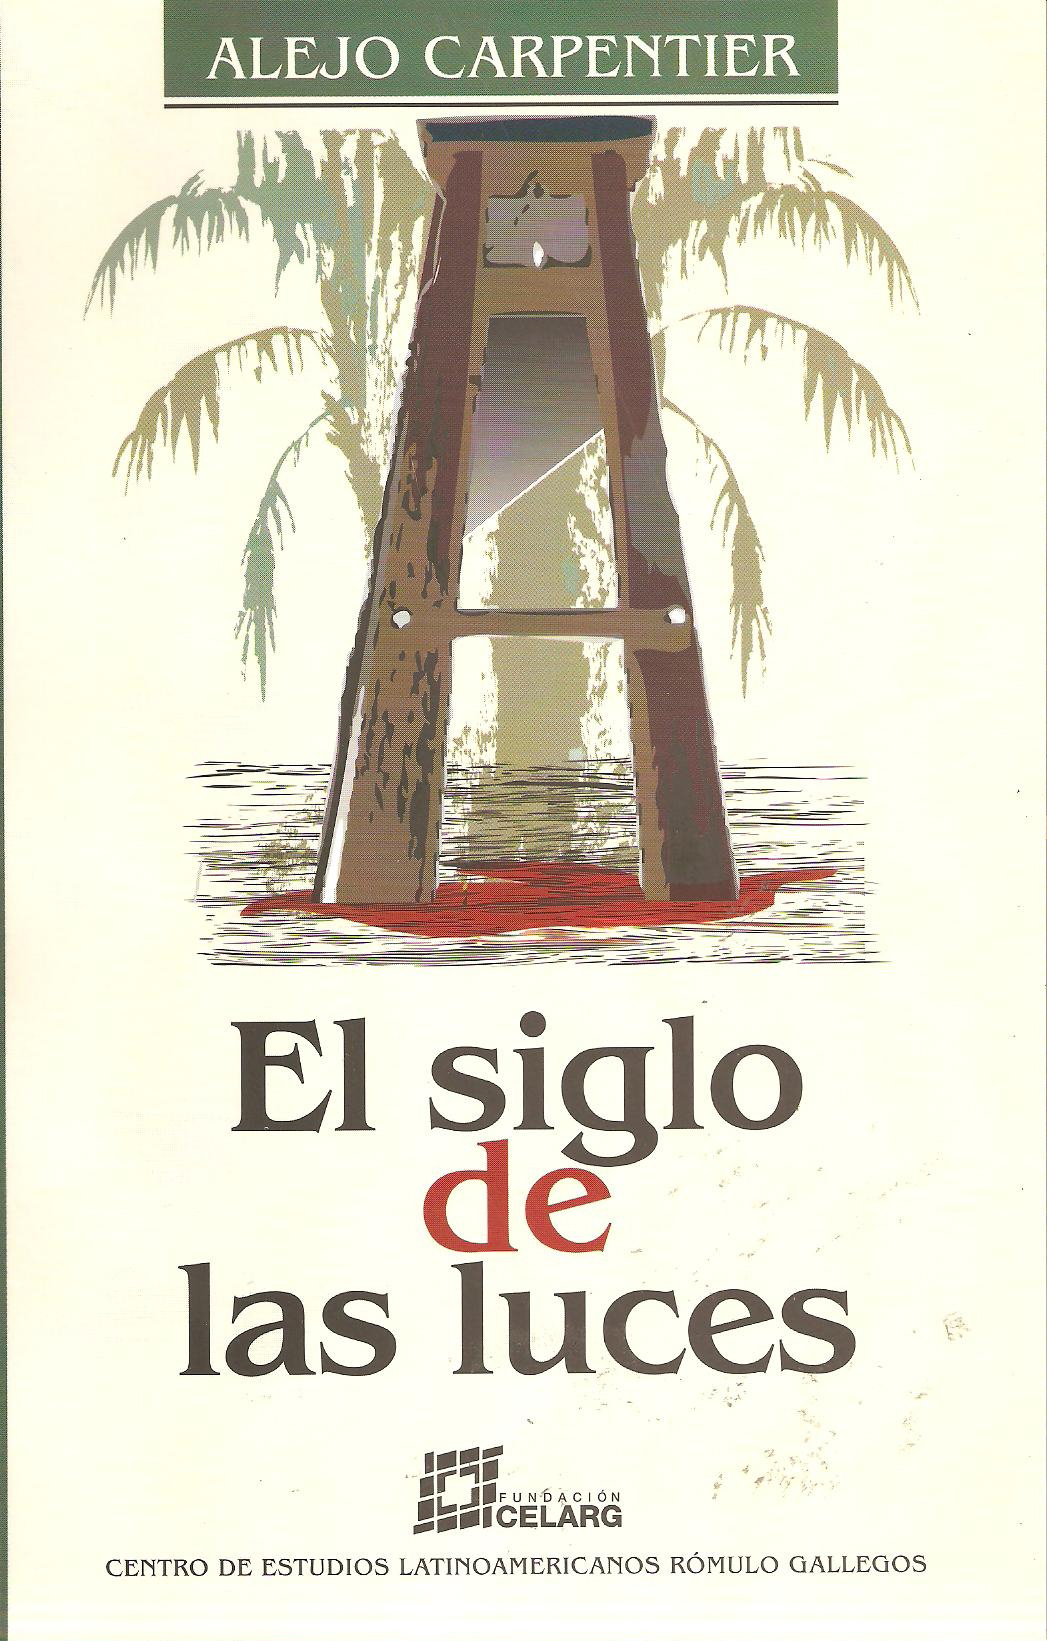 El siglo de las luces (1962) - Alejo Carpentier